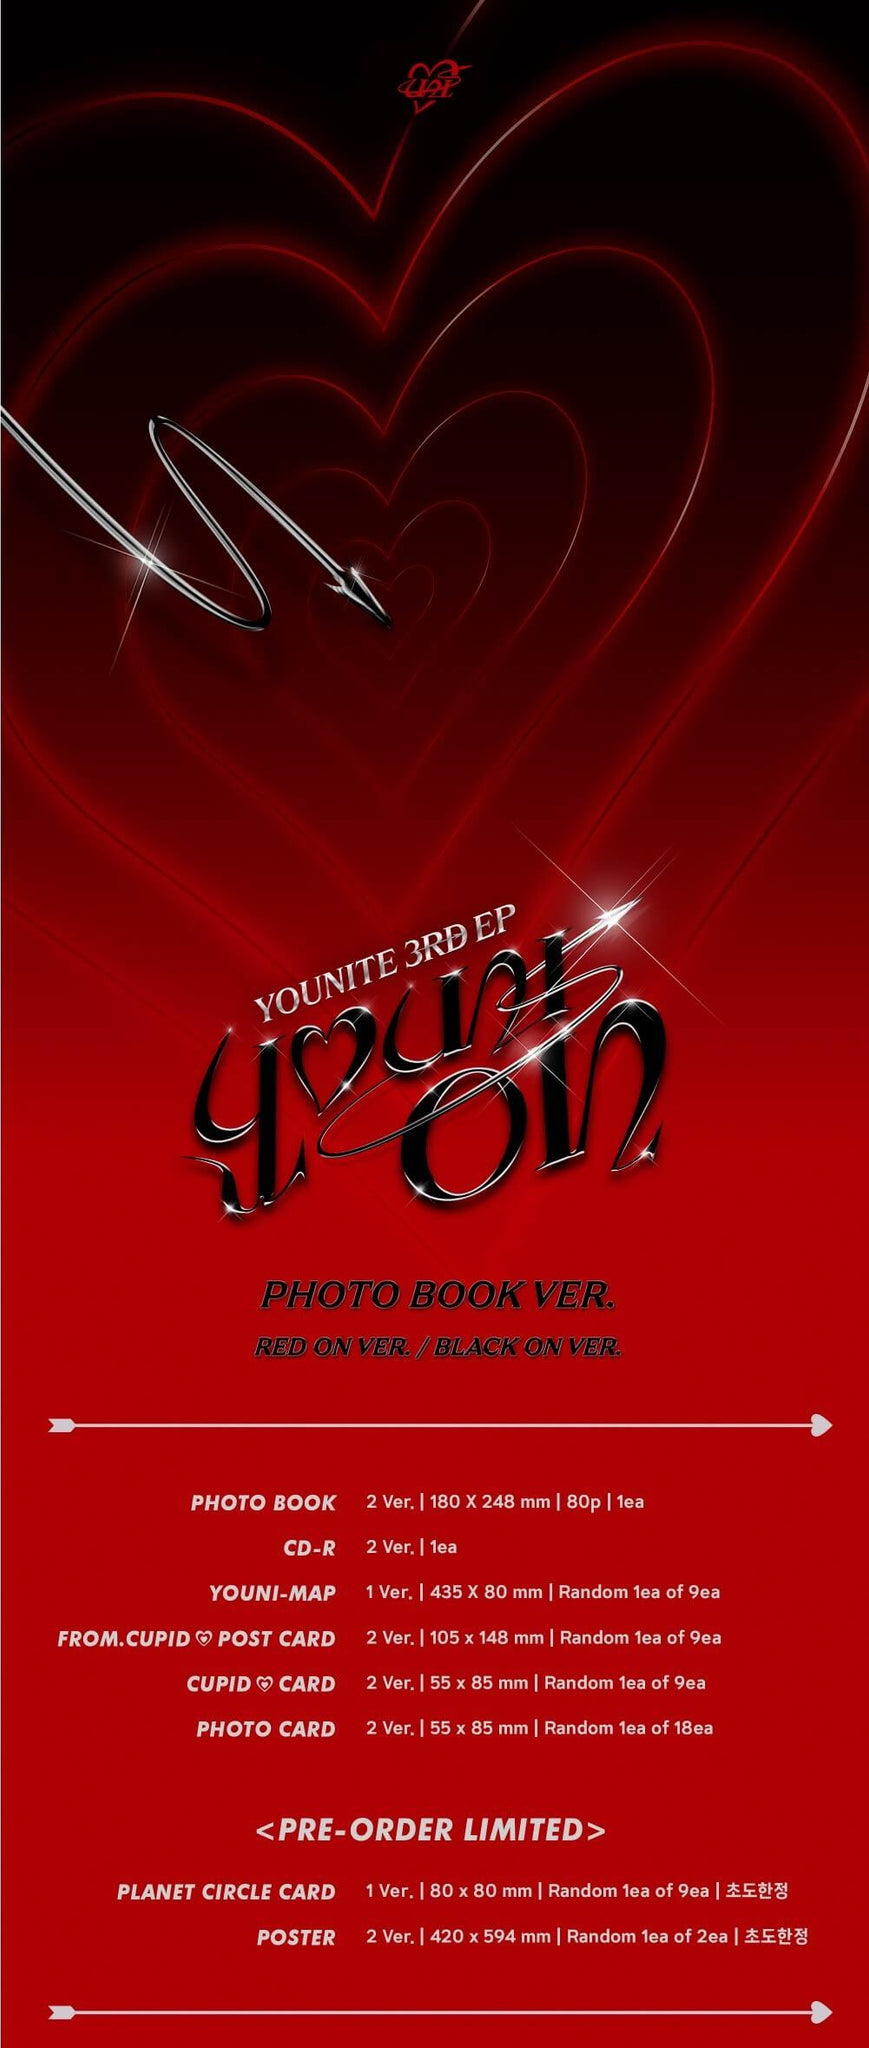 YOUNITE 3rd Mini Album YOUNI-ON Inclusions Album Info